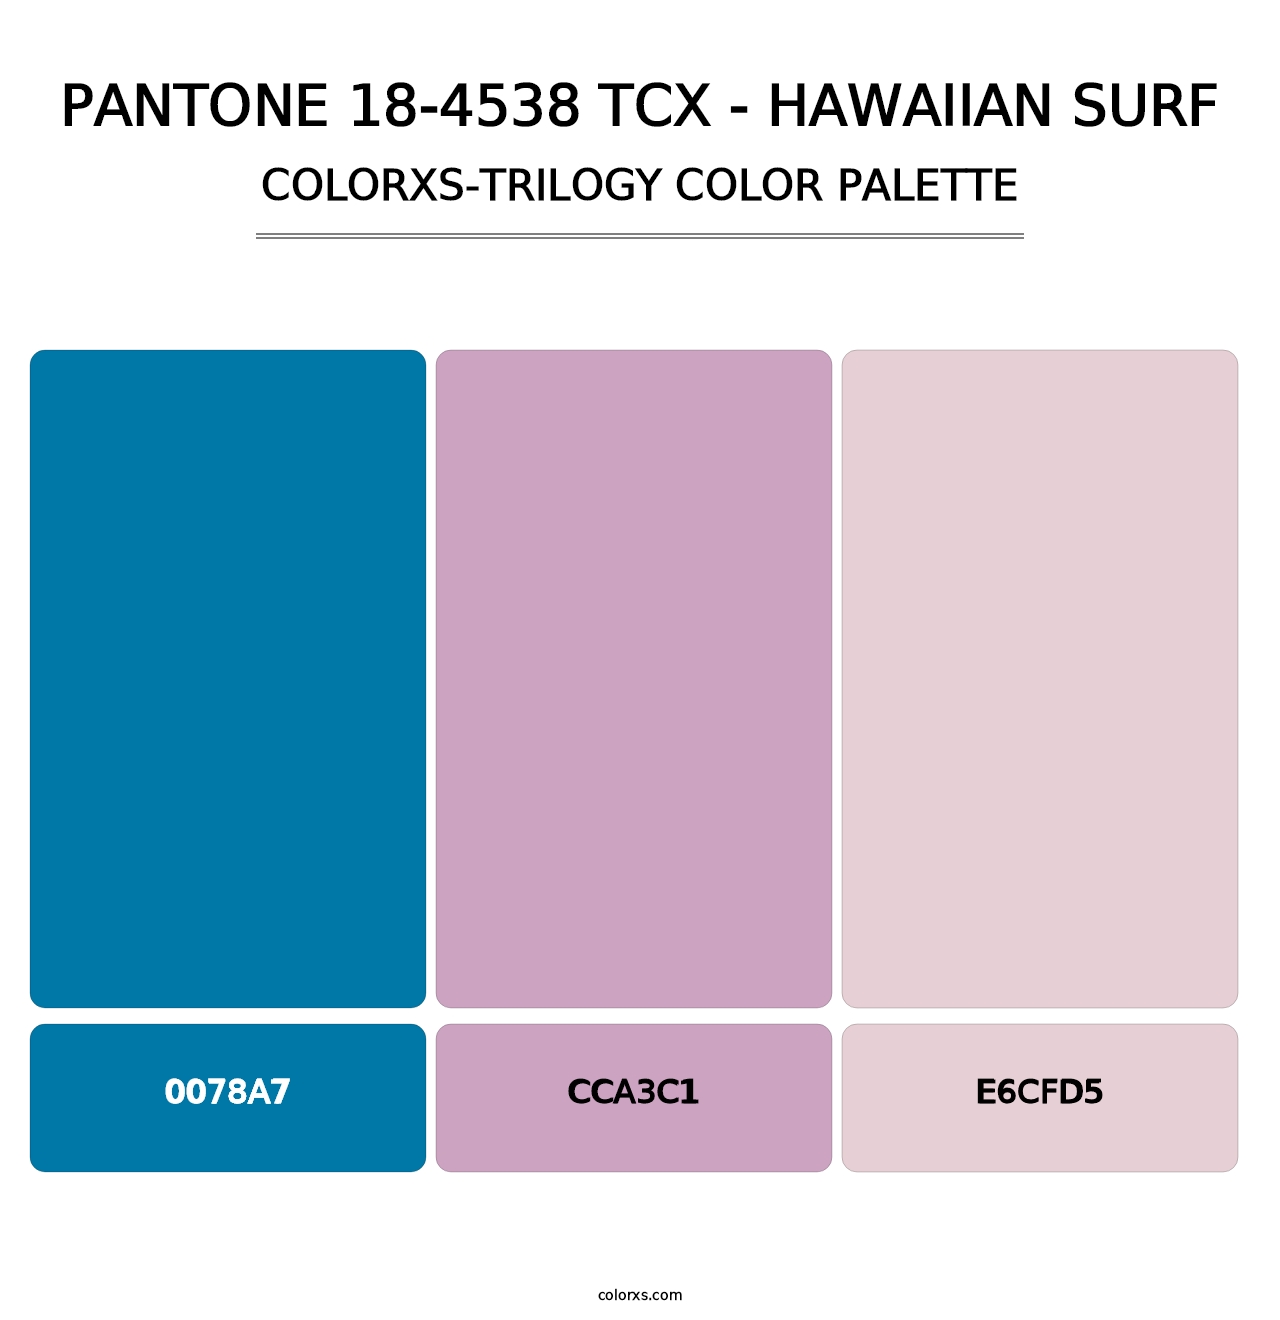 PANTONE 18-4538 TCX - Hawaiian Surf - Colorxs Trilogy Palette